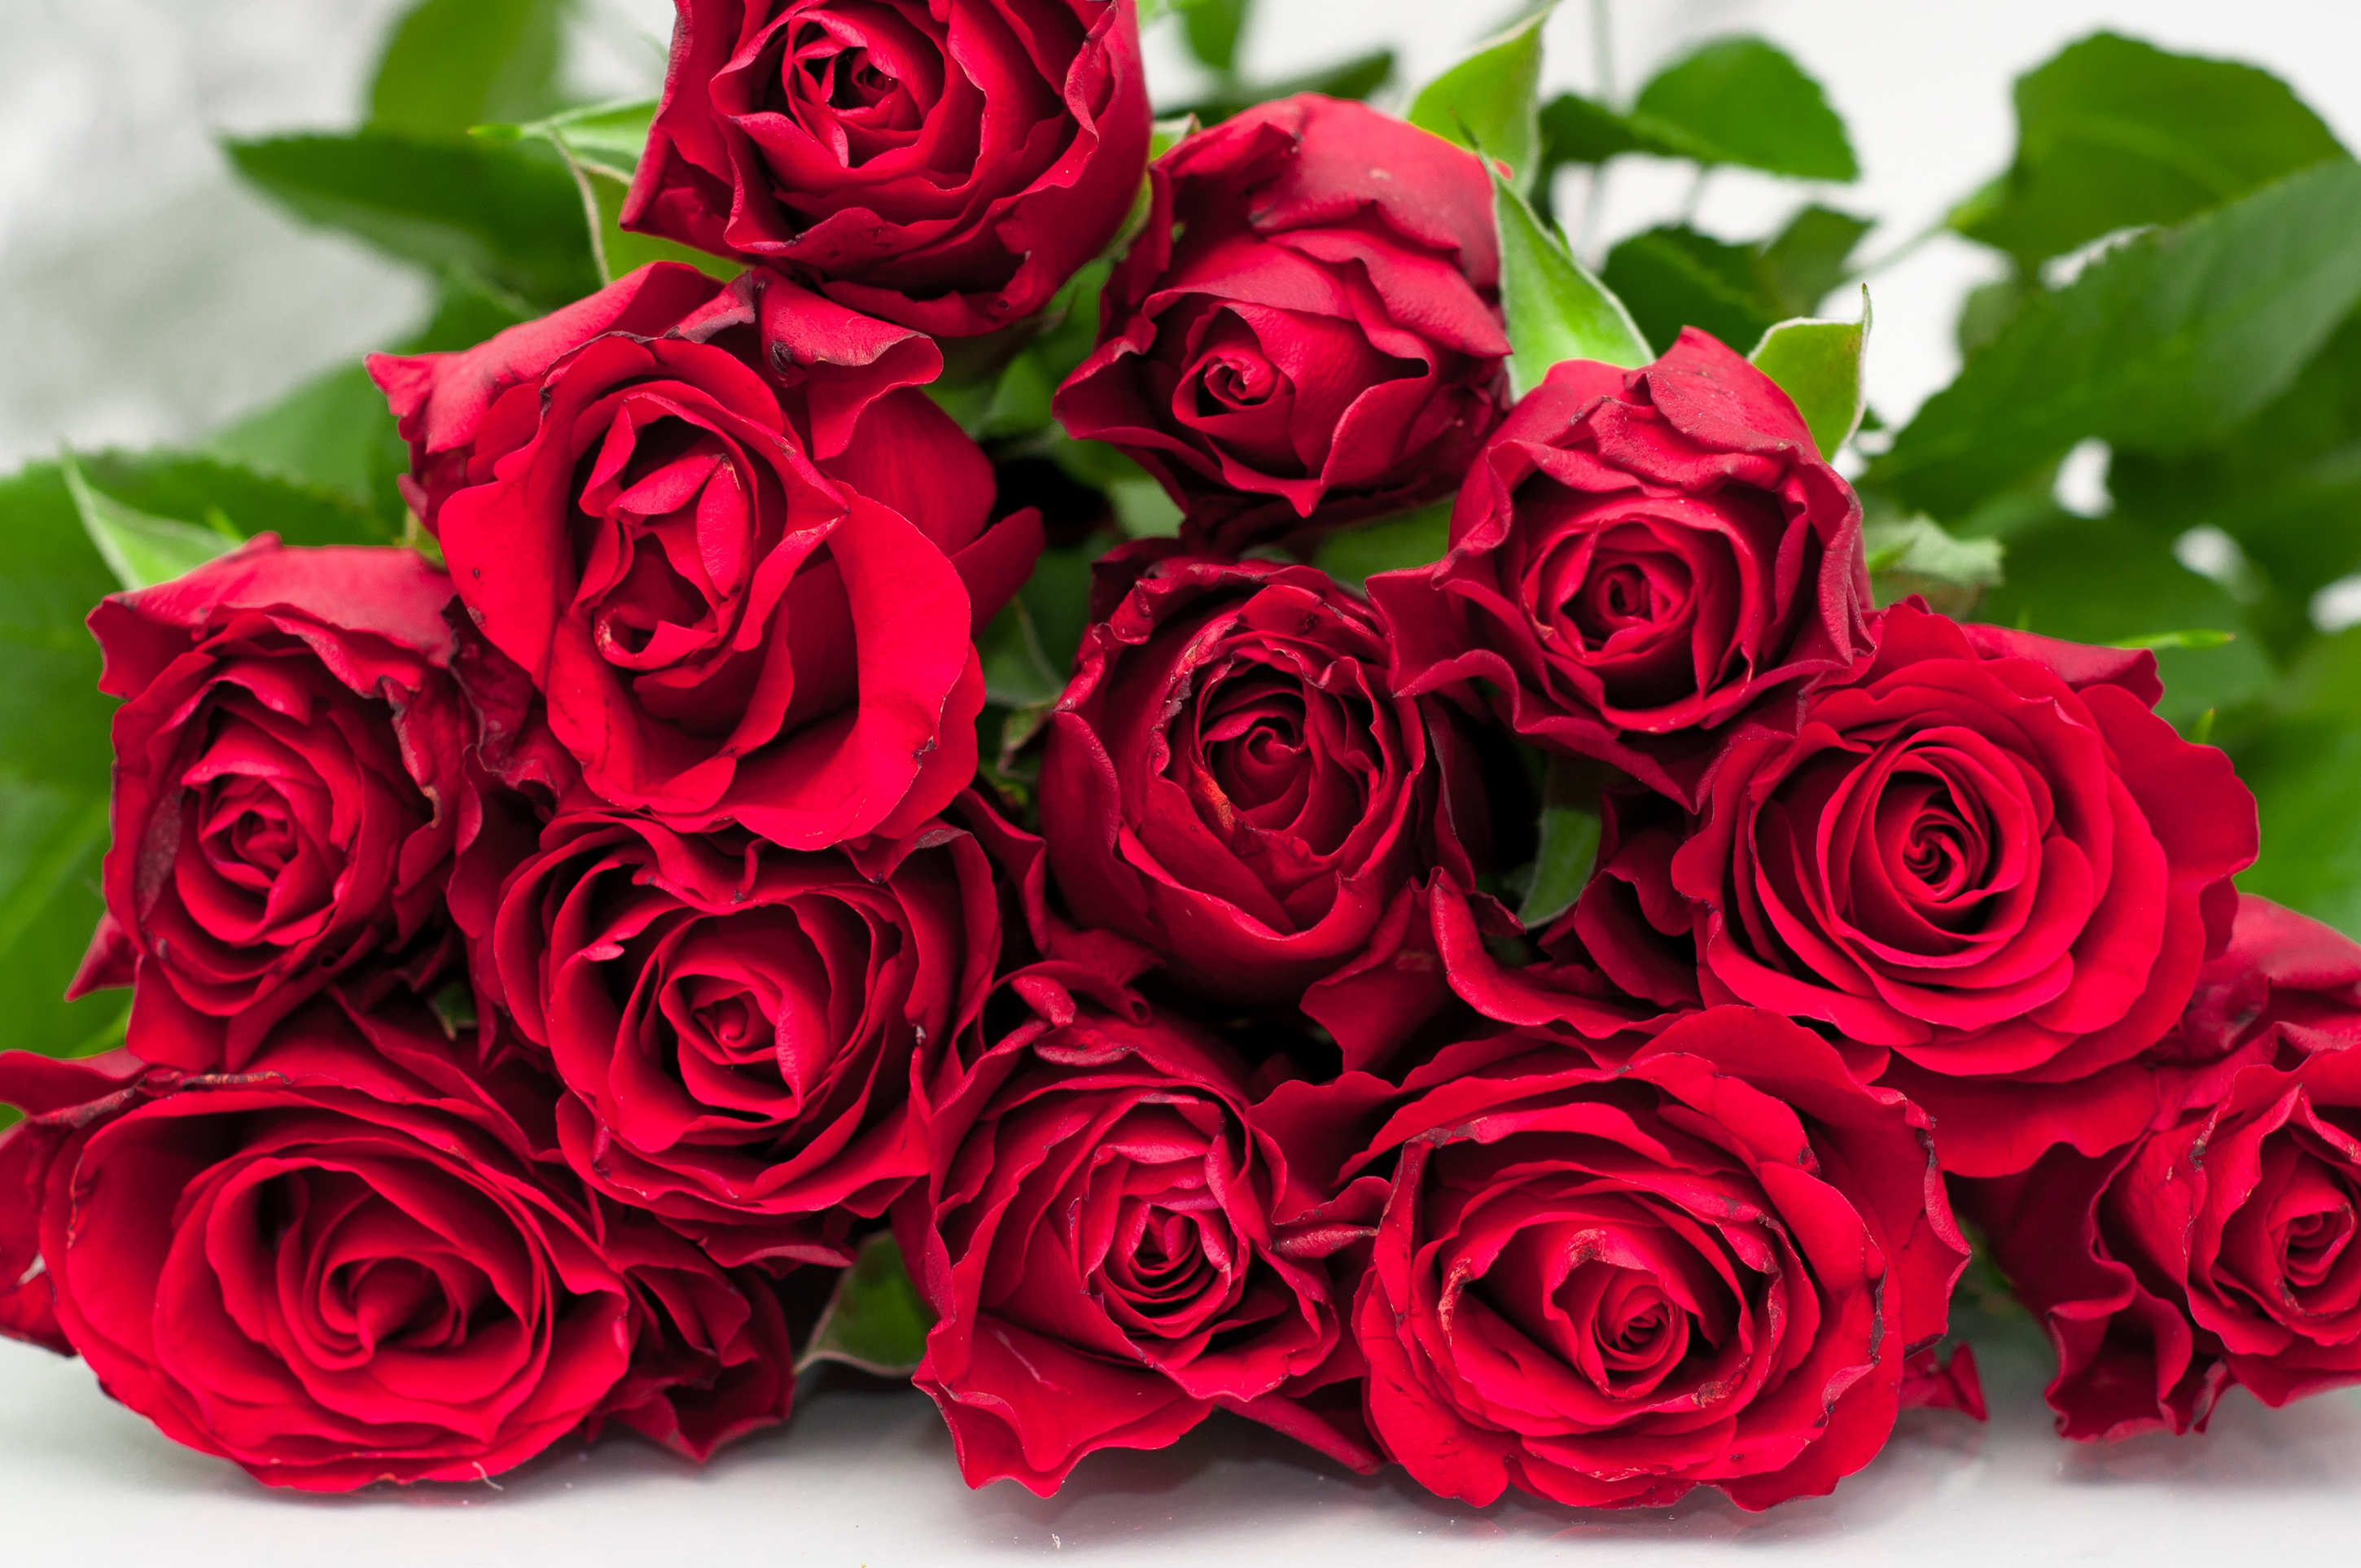 Роз оо. Красивый букет роз. Букет красных роз. Шикарный букет алых роз.